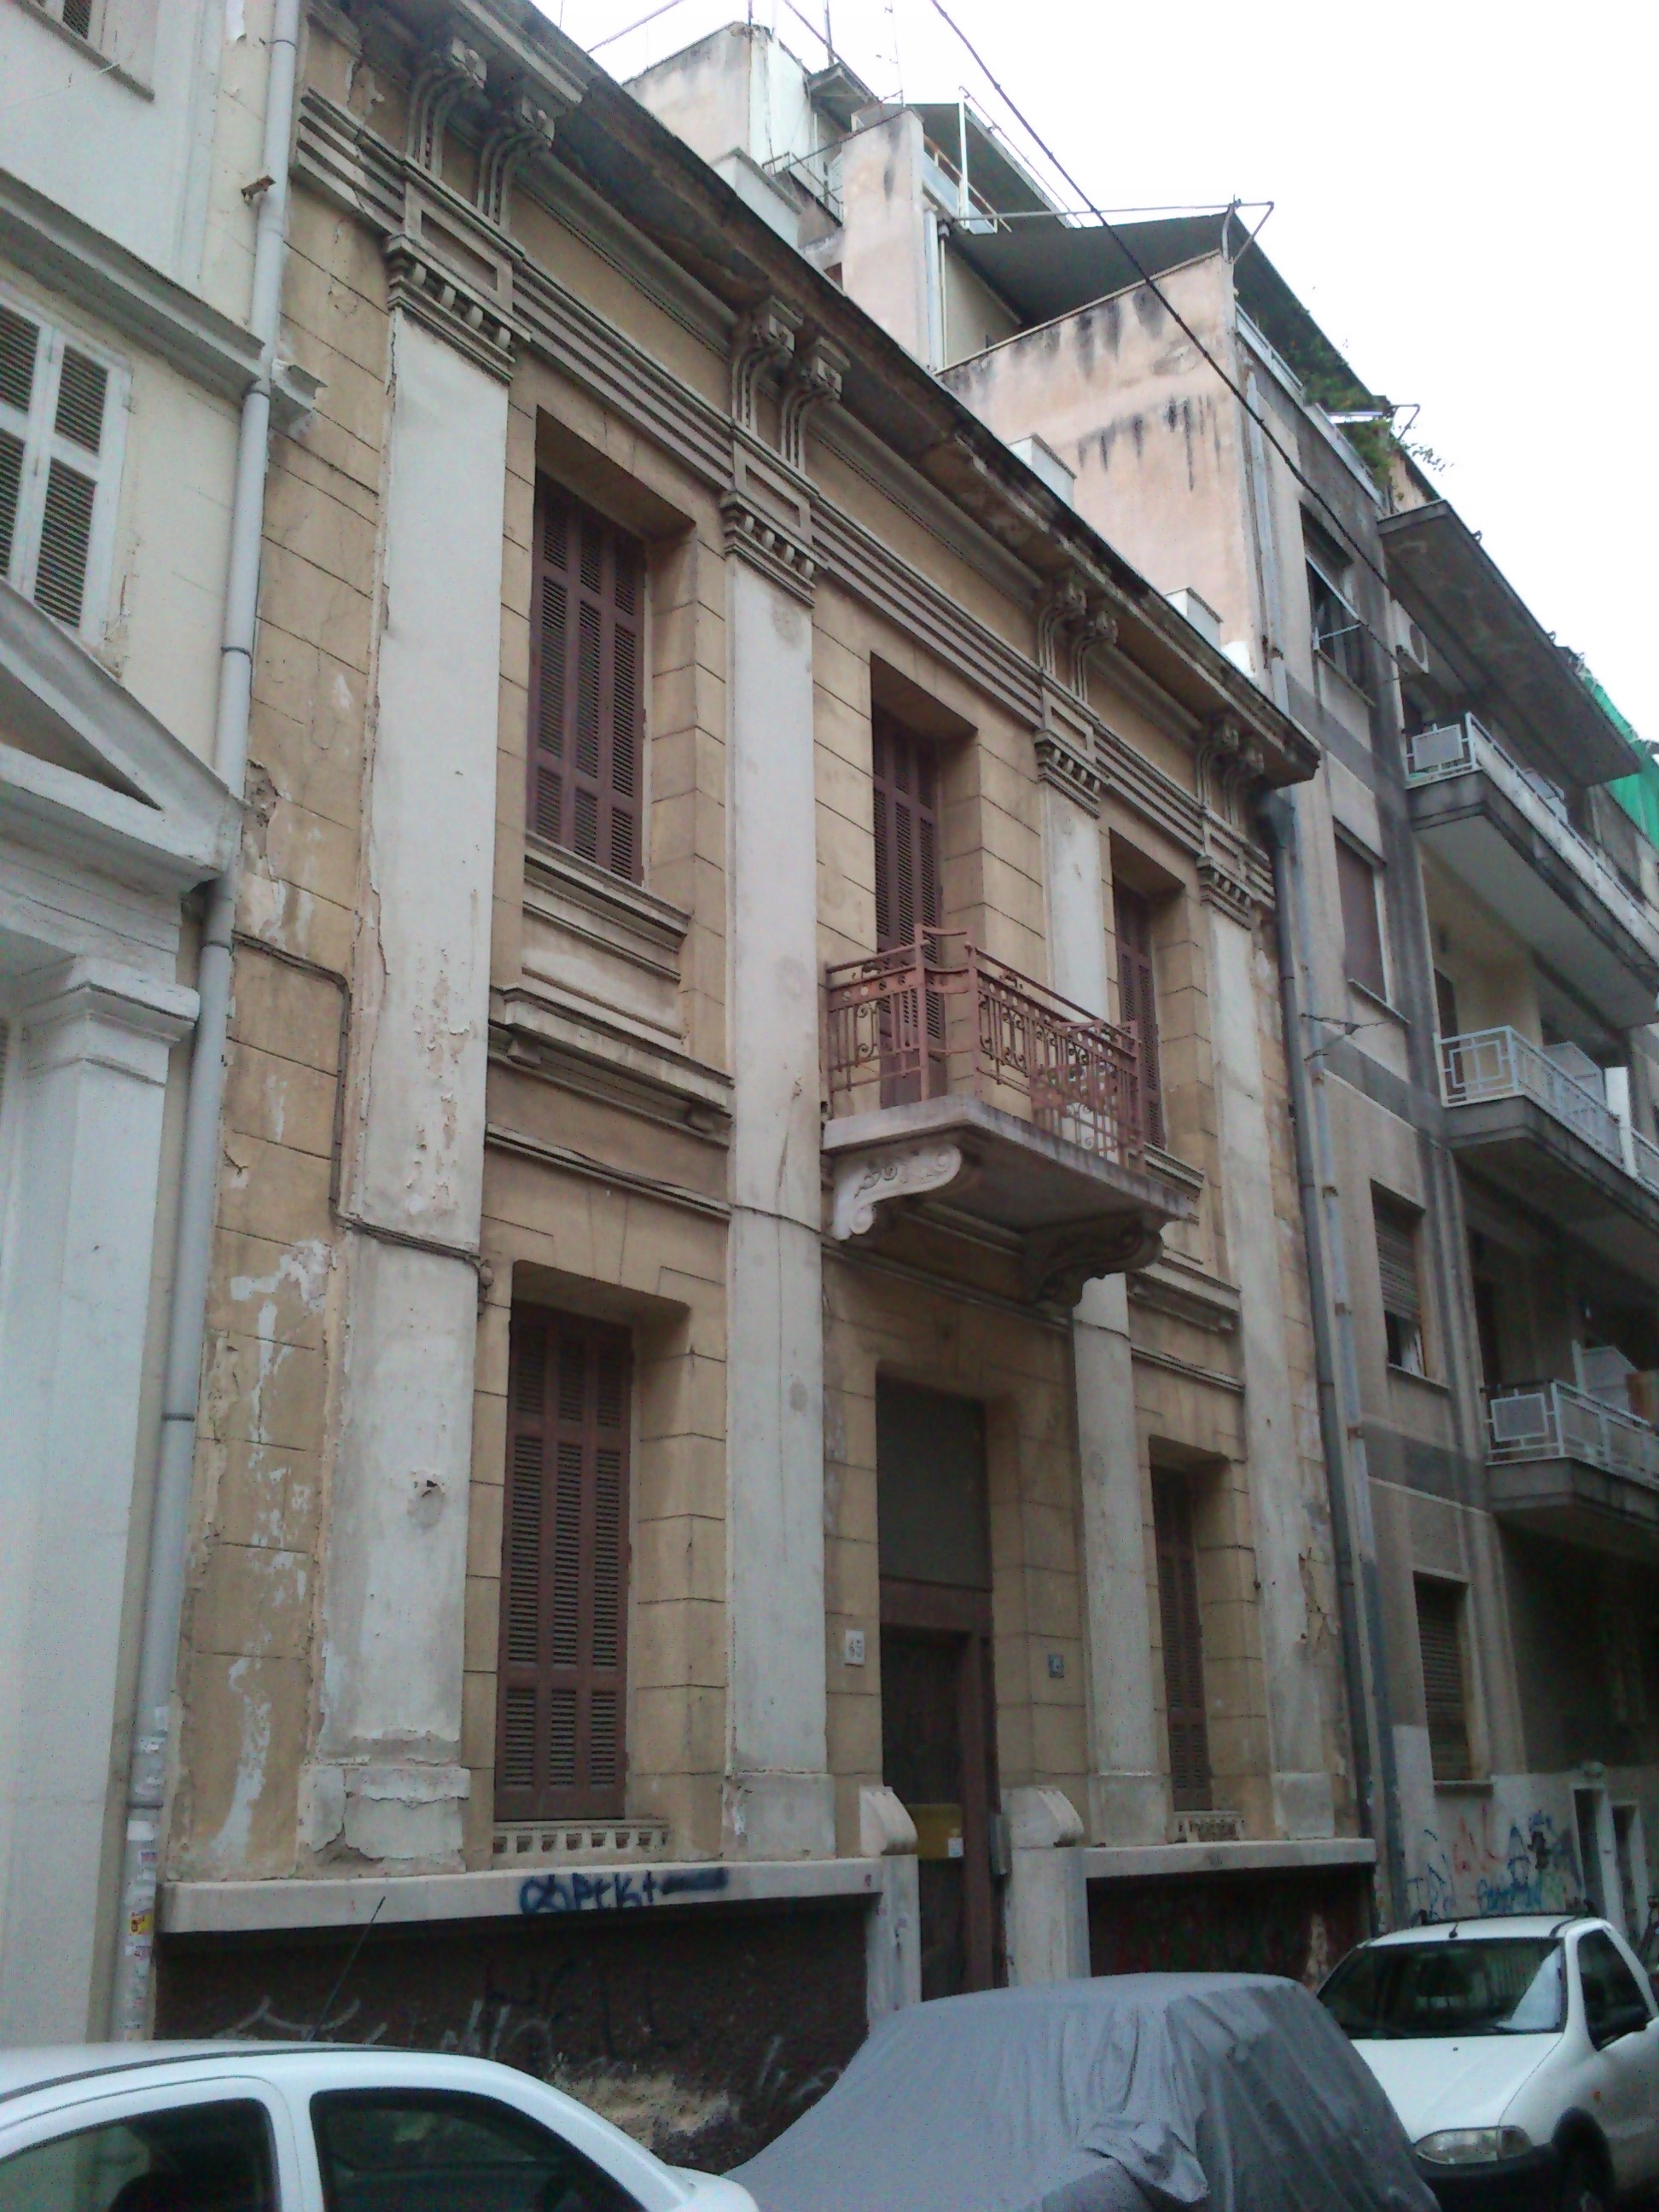 View of the main facade